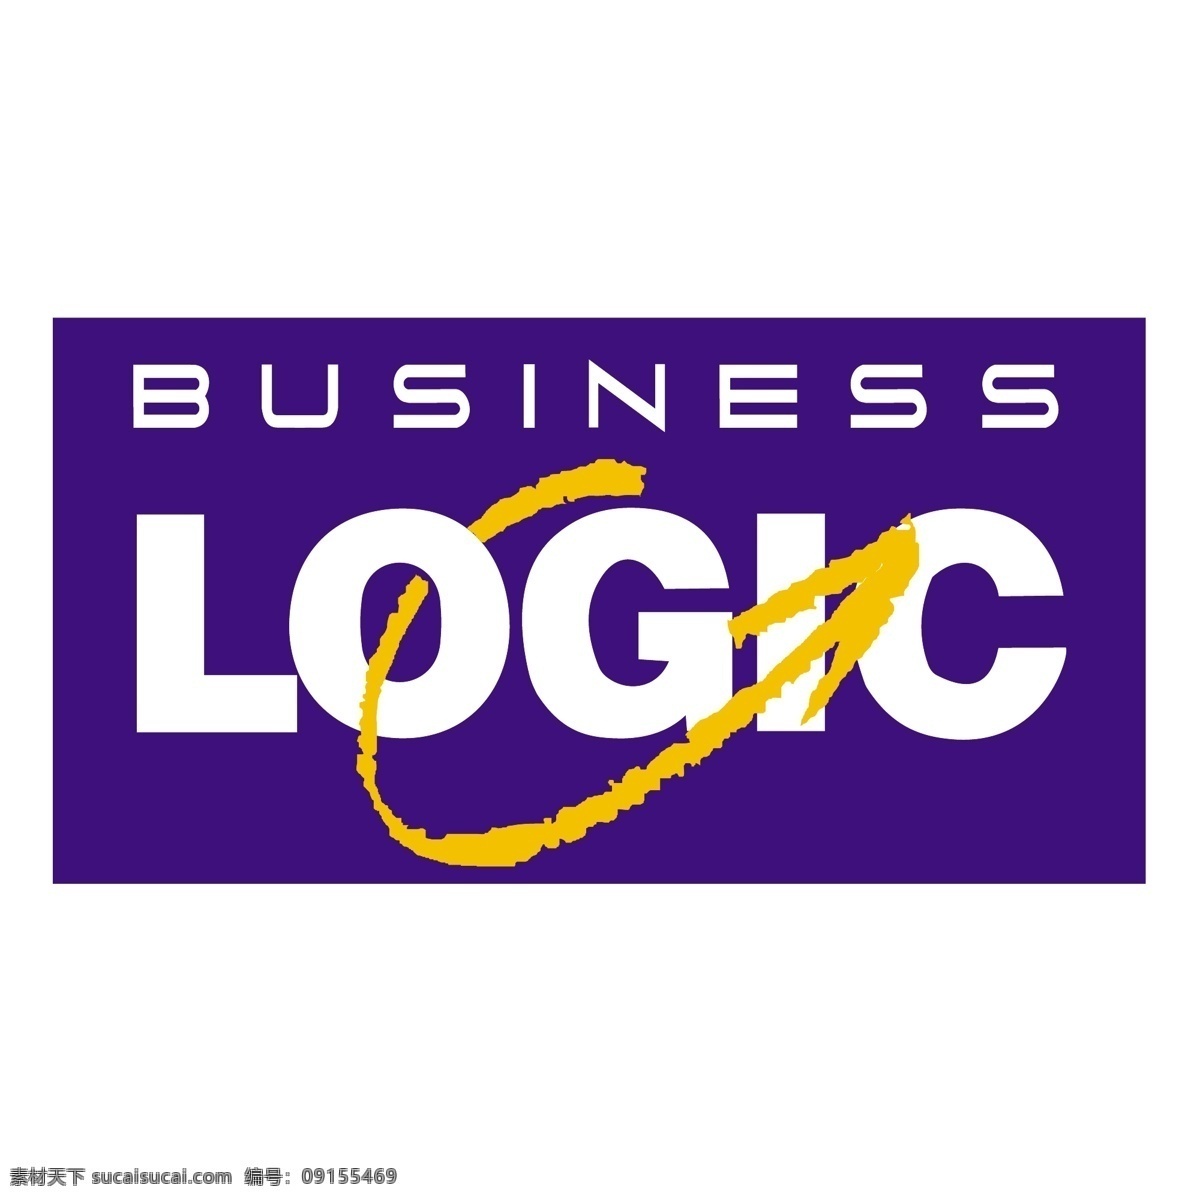 业务 逻辑 标识 公司 免费 品牌 品牌标识 商标 矢量标志下载 免费矢量标识 矢量 psd源文件 logo设计